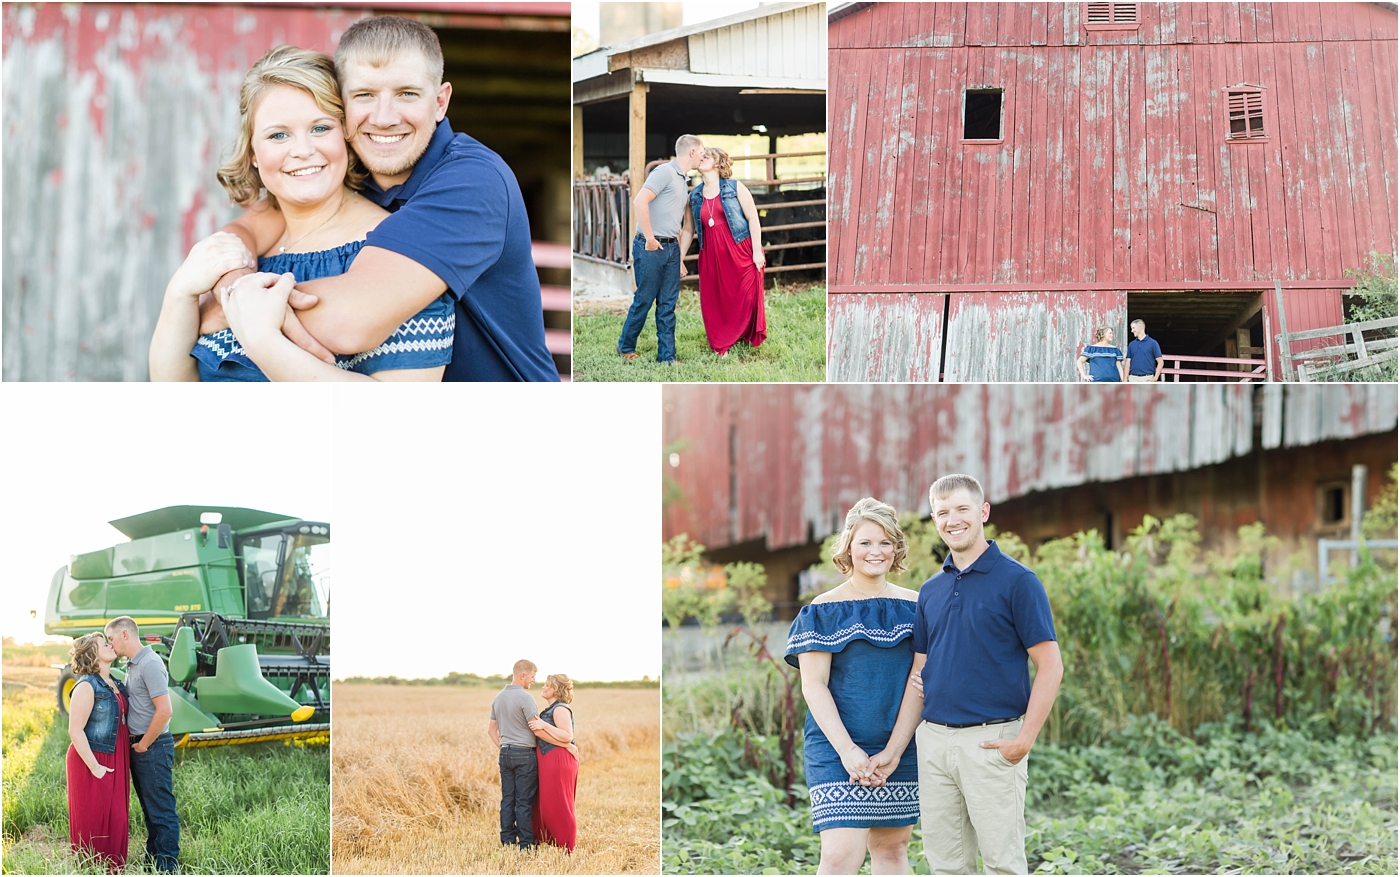 Family Farm Engagement Photos,Loren Jackson Photography,Photographer Akron Ohio,cleveland wedding photography,